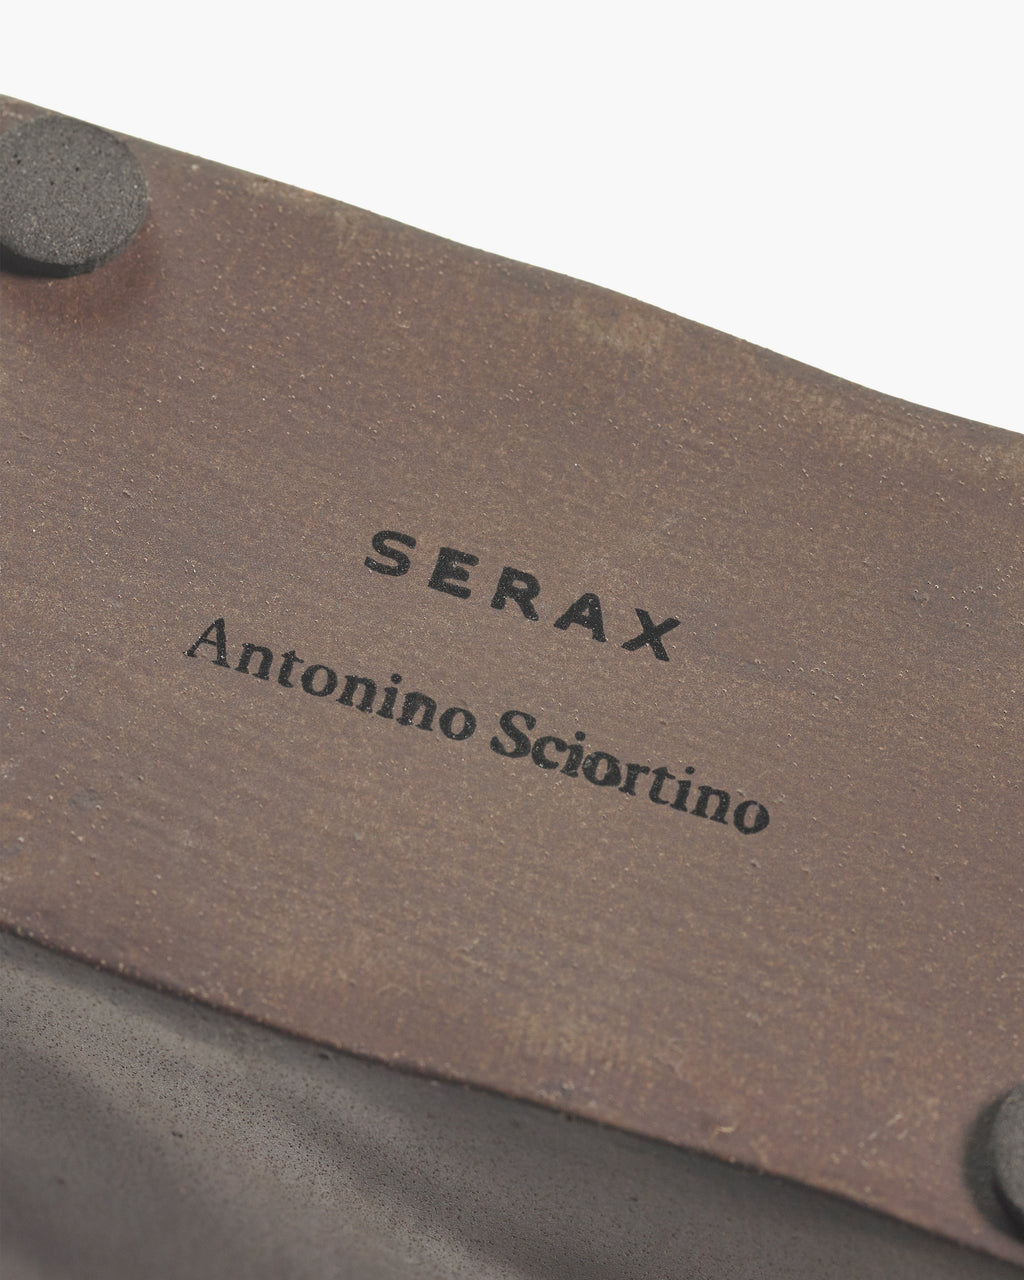 B7224200-706 Serax Antonino Sciortino